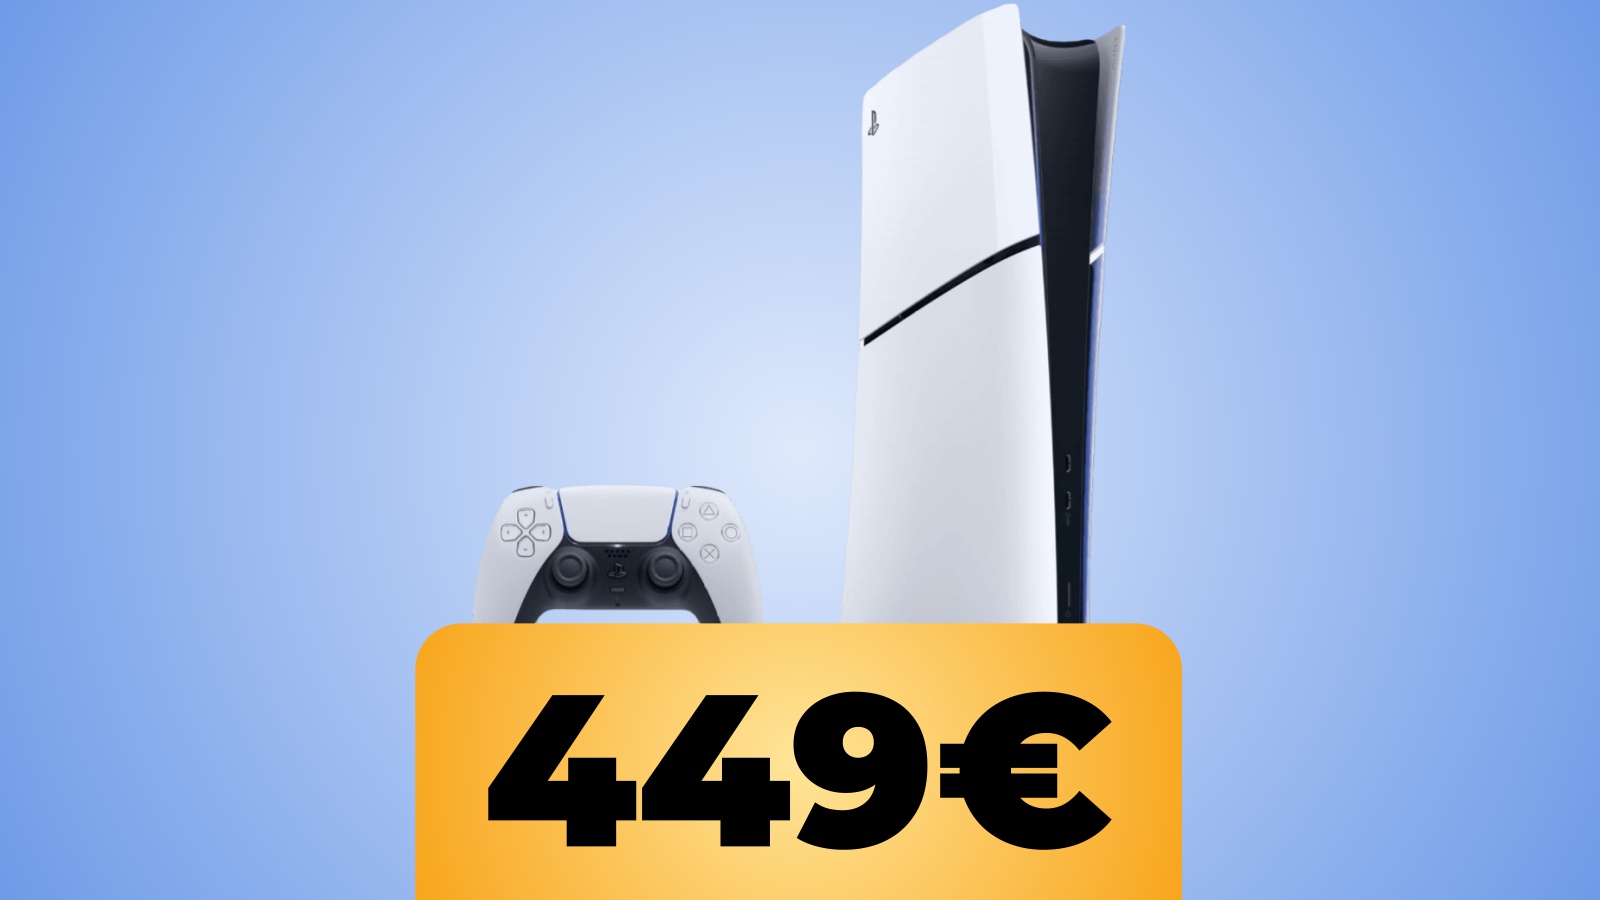 PS5 Slim Digital ora disponibile su Amazon Italia